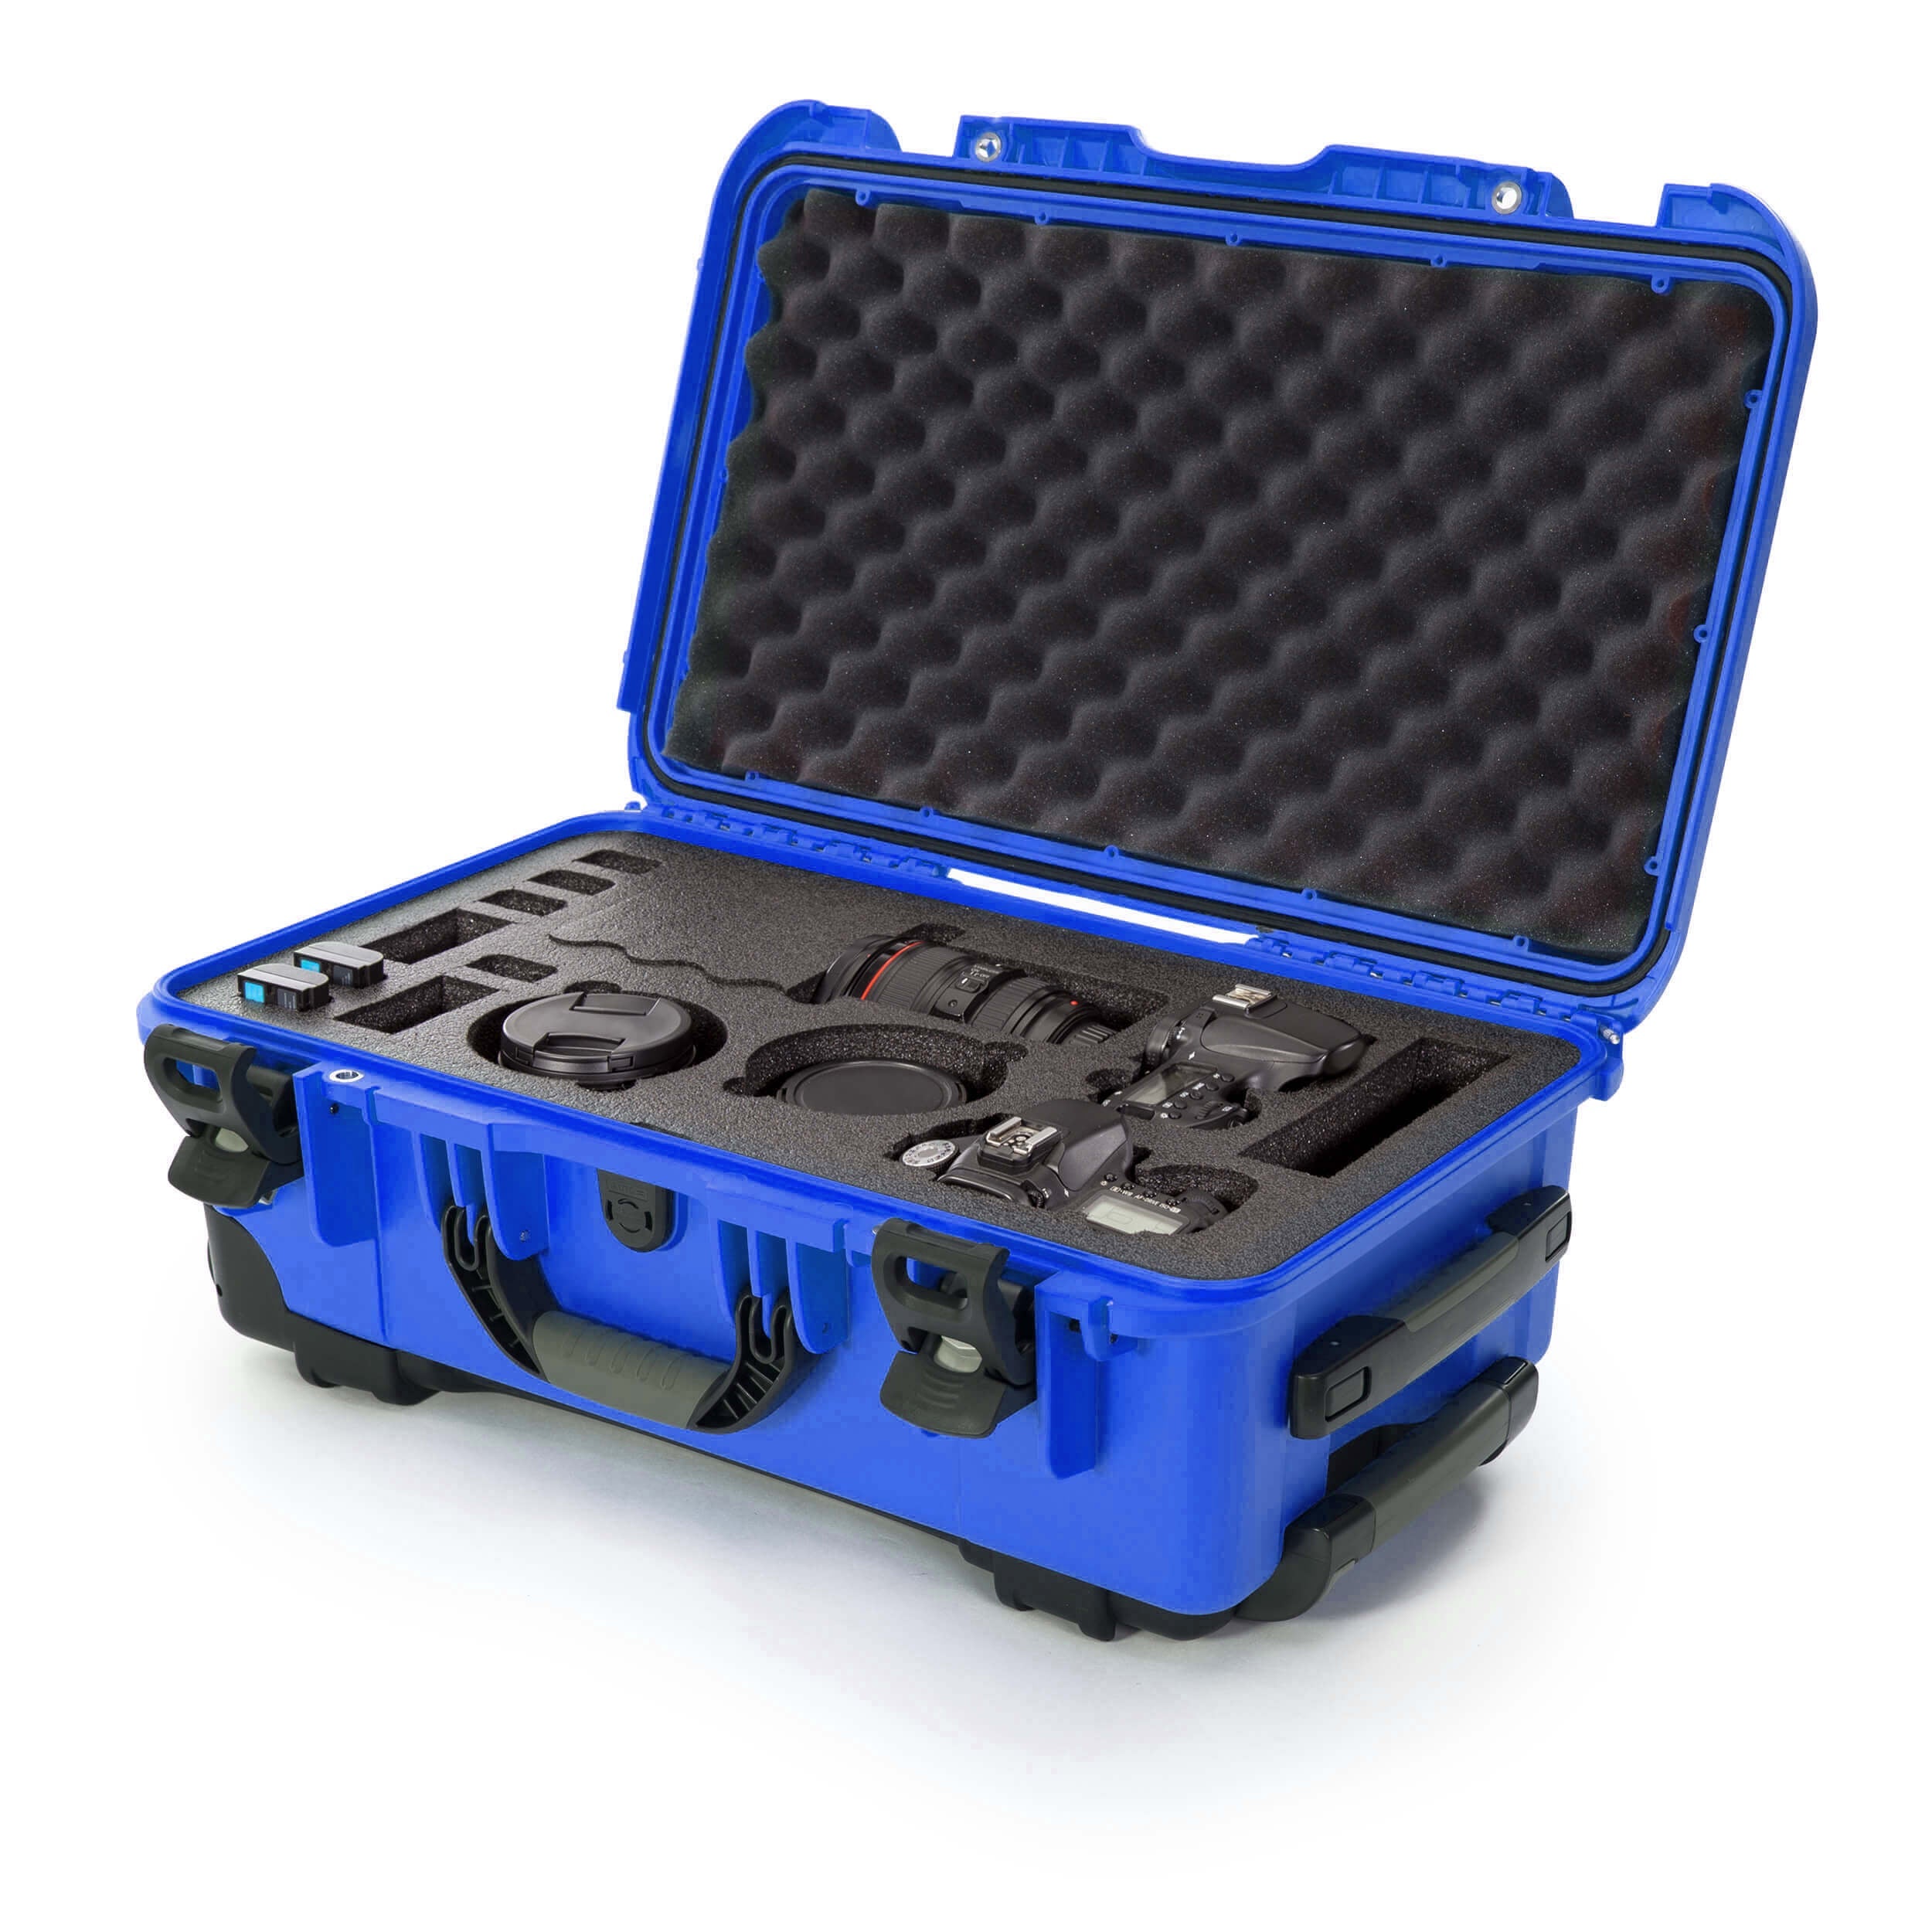 NANUK 935 DSLR Camera valise-Camera valise-Blue-Eggshell Foam-NANUK